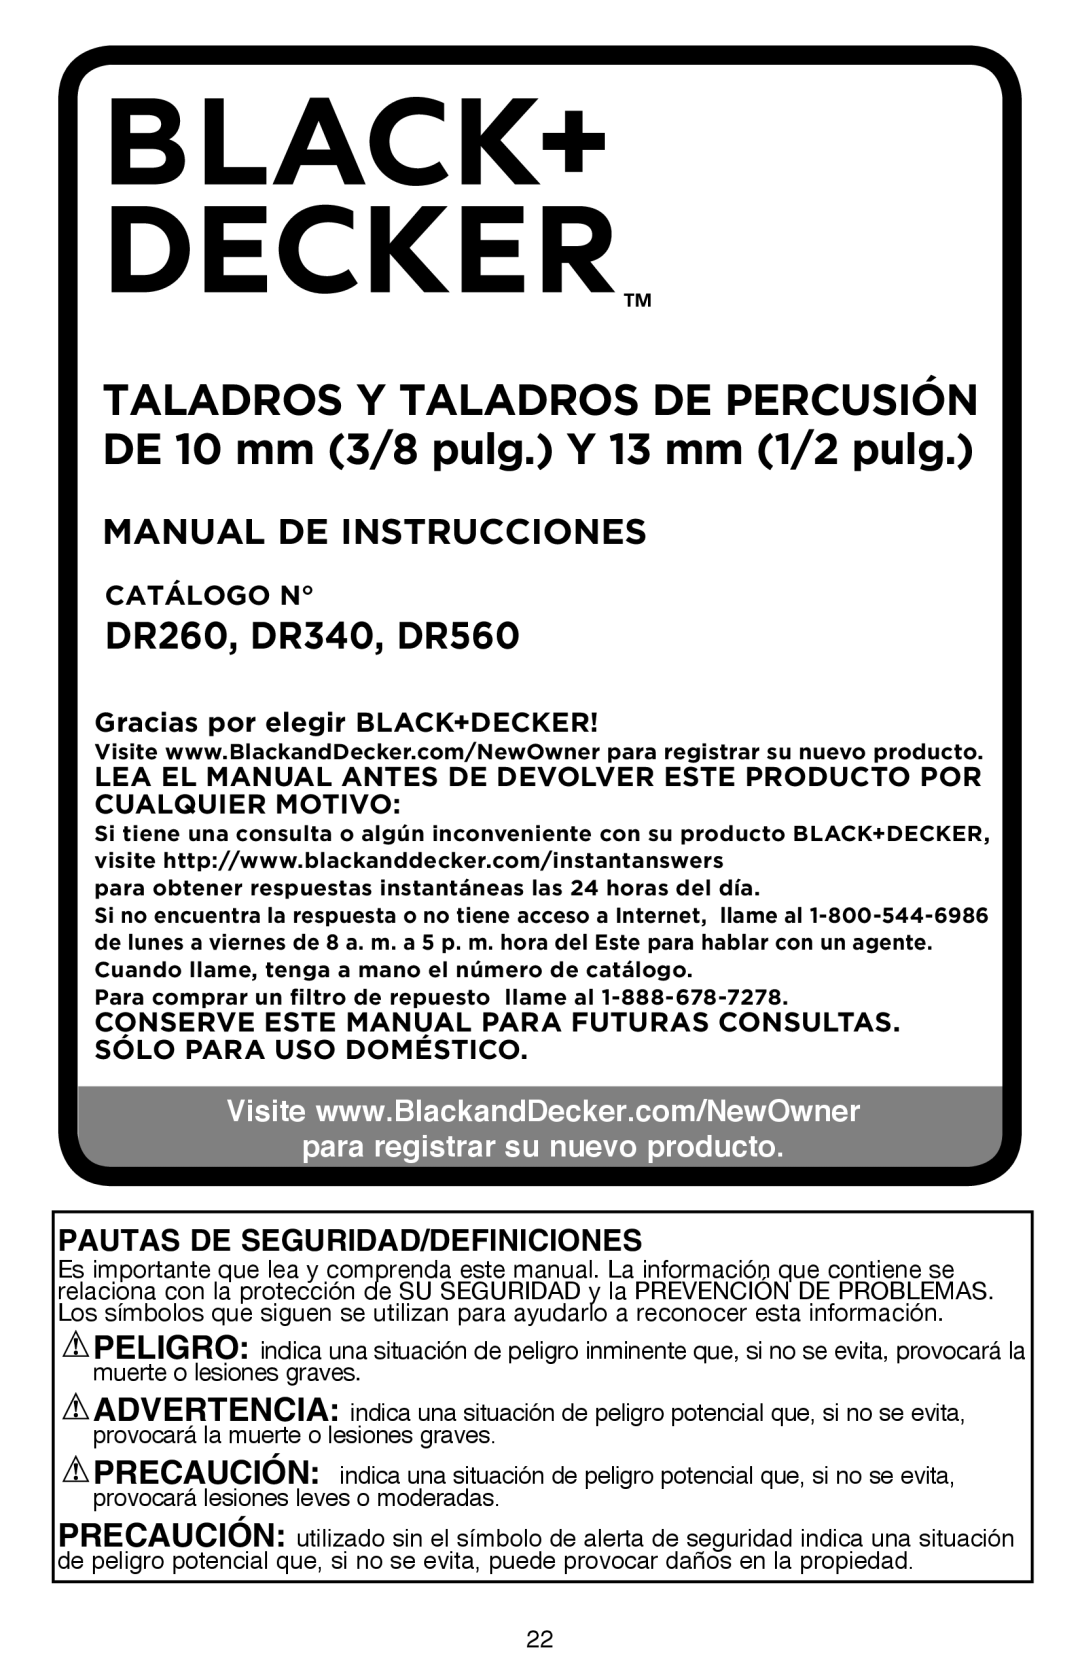 Black & Decker DR260BR Manual De Instrucciones, para registrar su nuevo producto, Pautas De Seguridad/Definiciones 